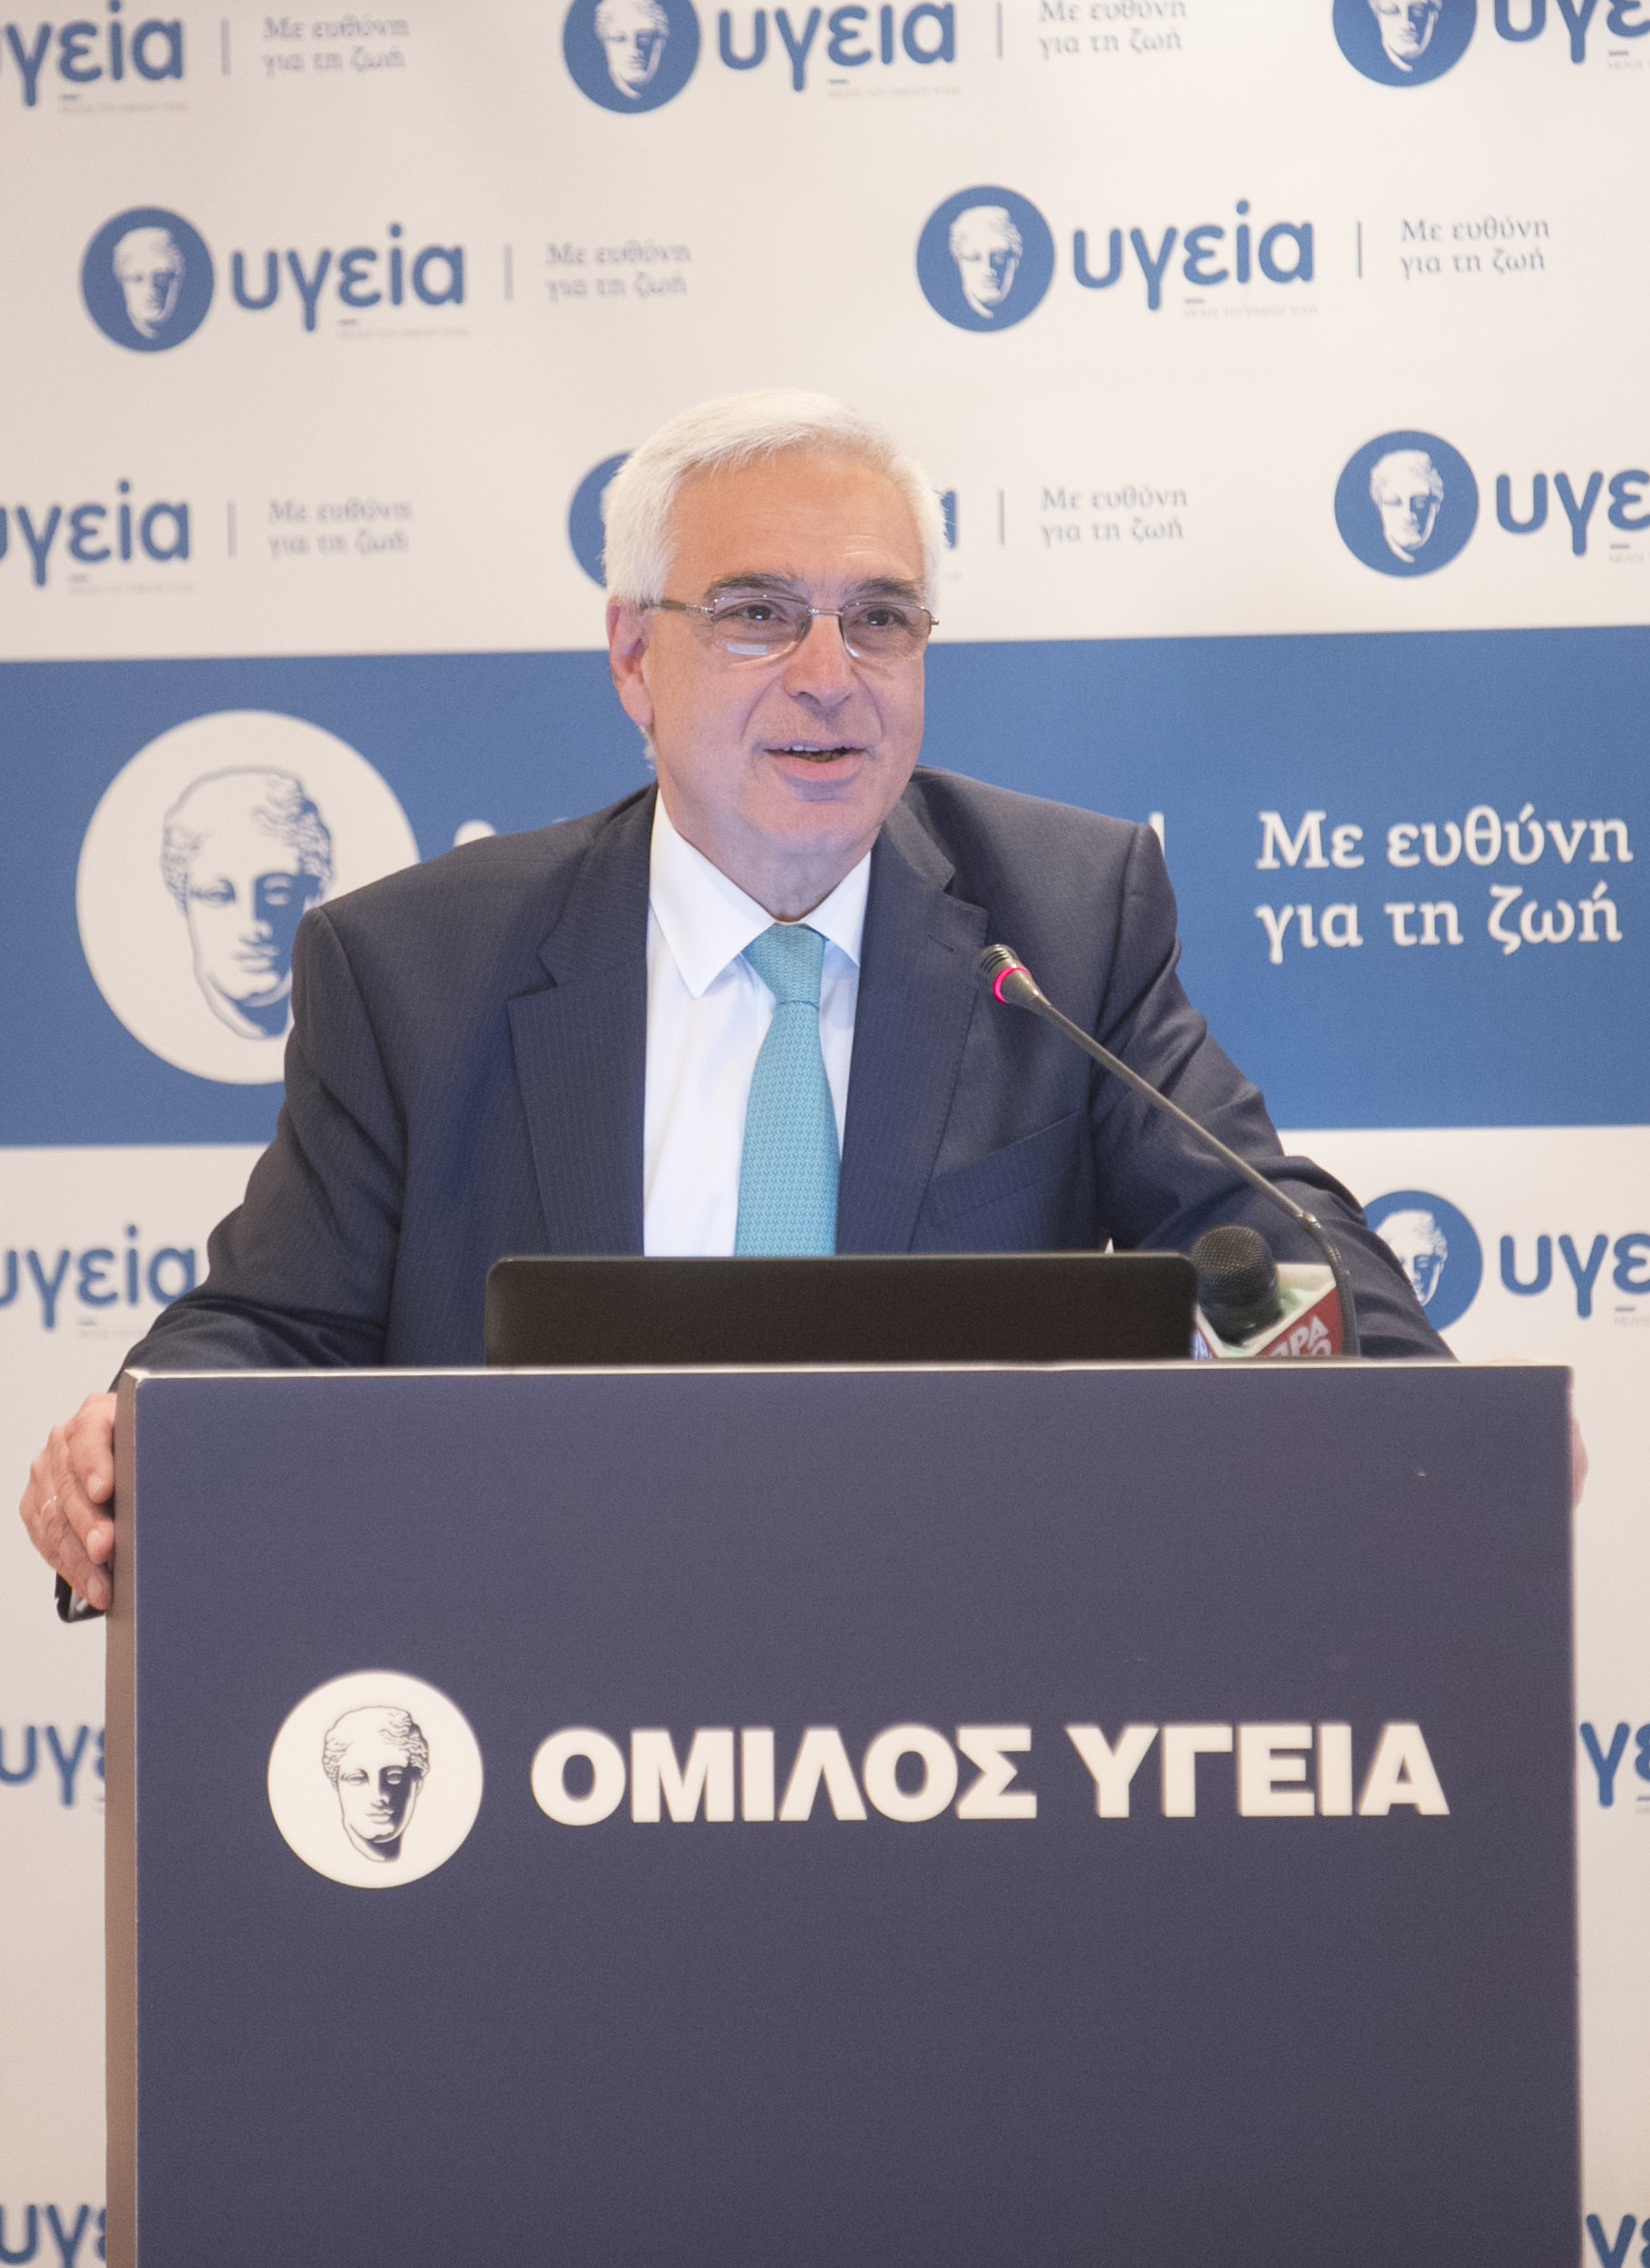 Όμιλος ΥΓΕΙΑ: Επίσημος Υποστηρικτής της Ελληνικής Ολυμπιακής Ομάδας  για τους Ολυμπιακούς Αγώνες στο Τόκυο το 2020